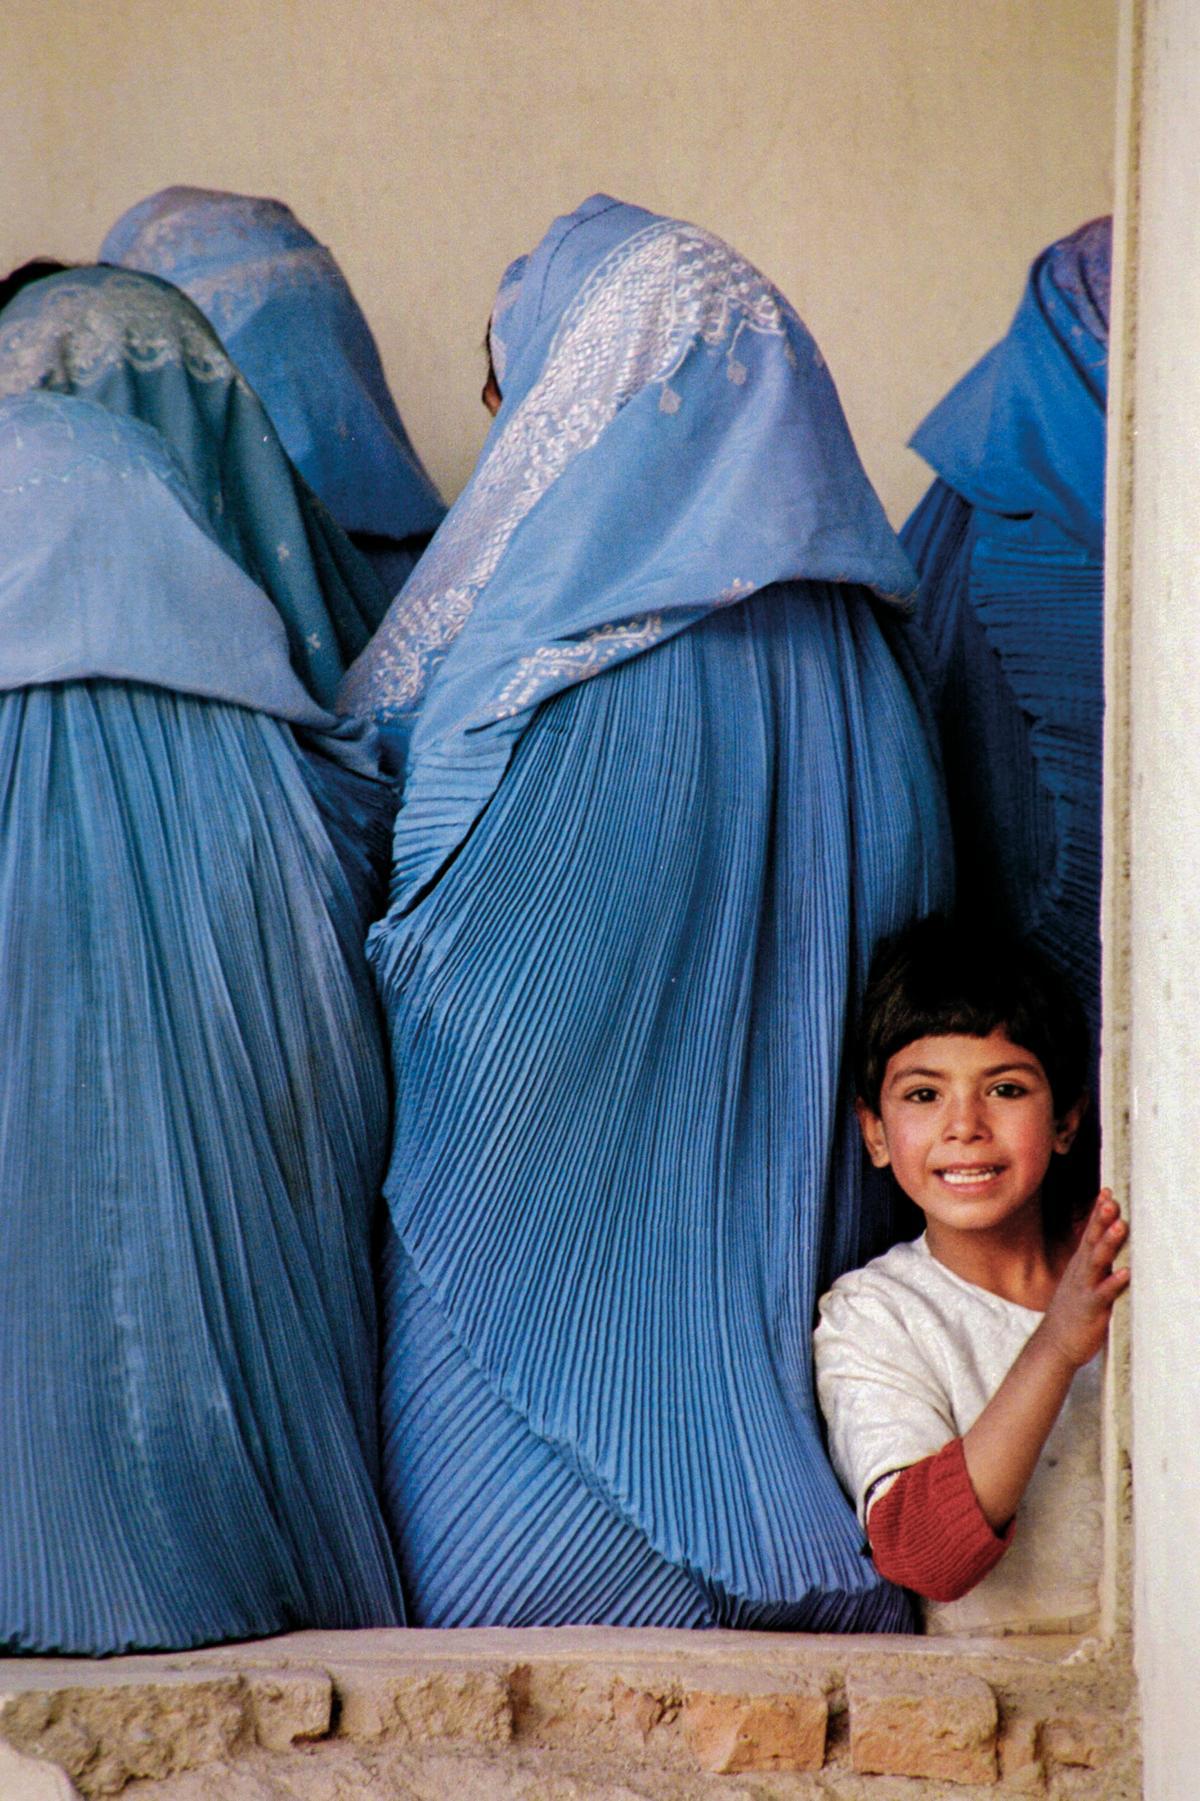 Pocos días después de la caída de los talibanes en Kabul, aterrizamos en Bagram con un cargamento de material para abrir un proyecto en el centro del país. Mientras gestionábamos los permisos para viajar, tuve tiempo de visitar una de las maternidades de la ciudad, en la que estábamos trabajando. (Kabul, Afganistán, 2001).